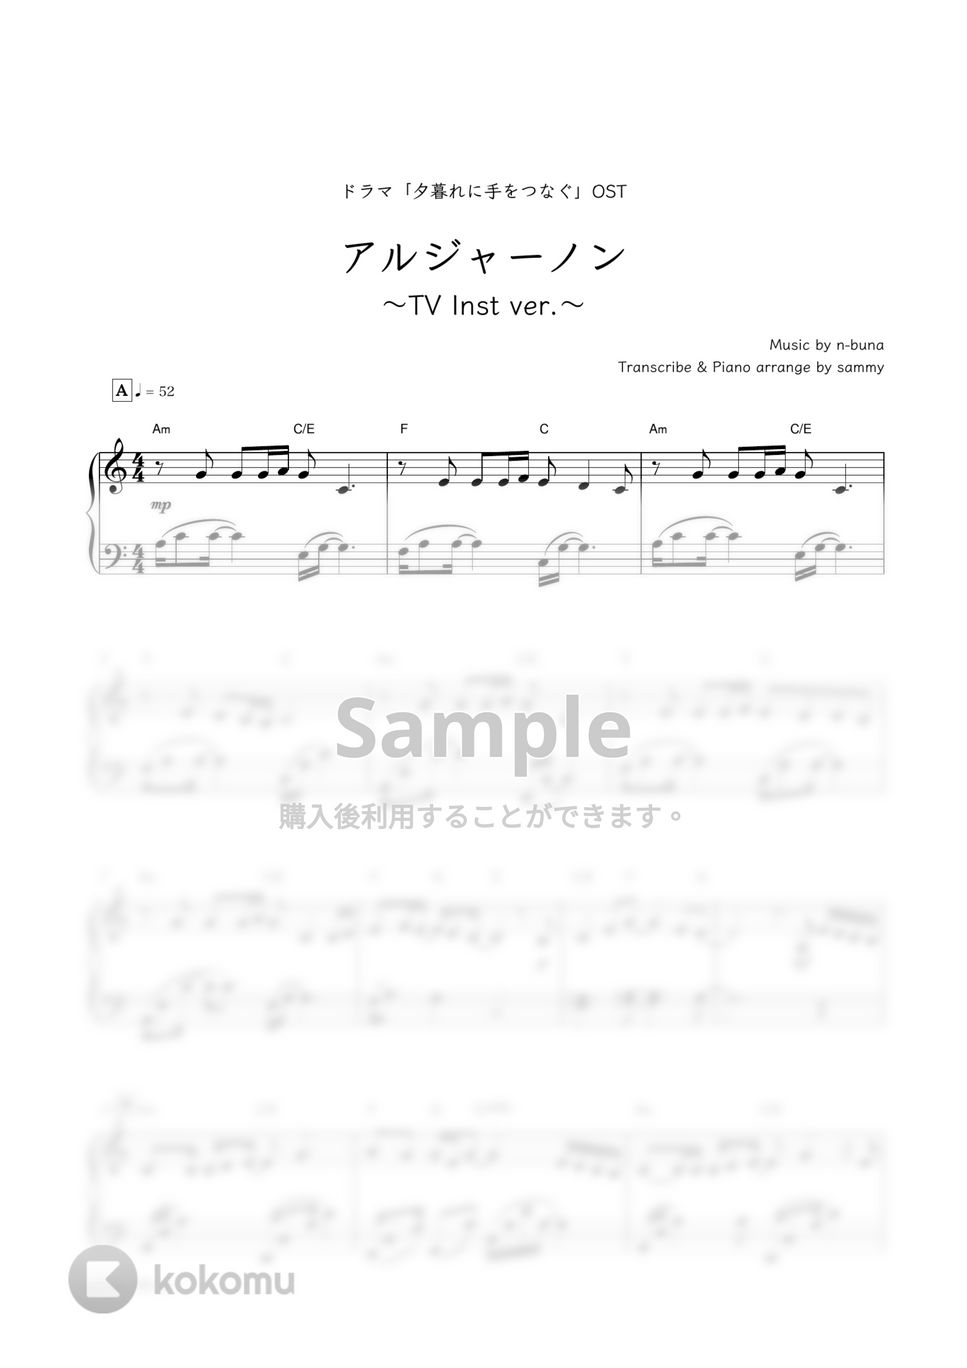 ヨルシカ・ドラマ『夕暮れに、手をつなぐ』OST - アルジャーノン (ドラマで流れたピアノver.) by sammy